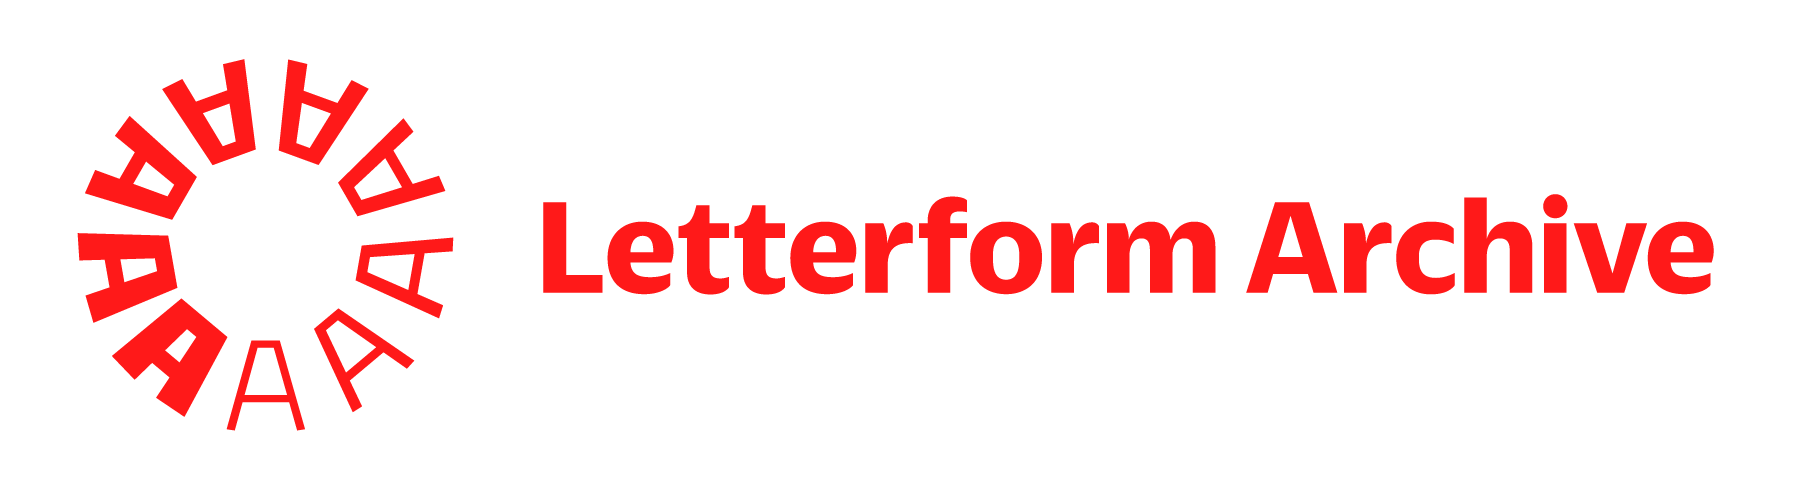 Letterform Archive logo